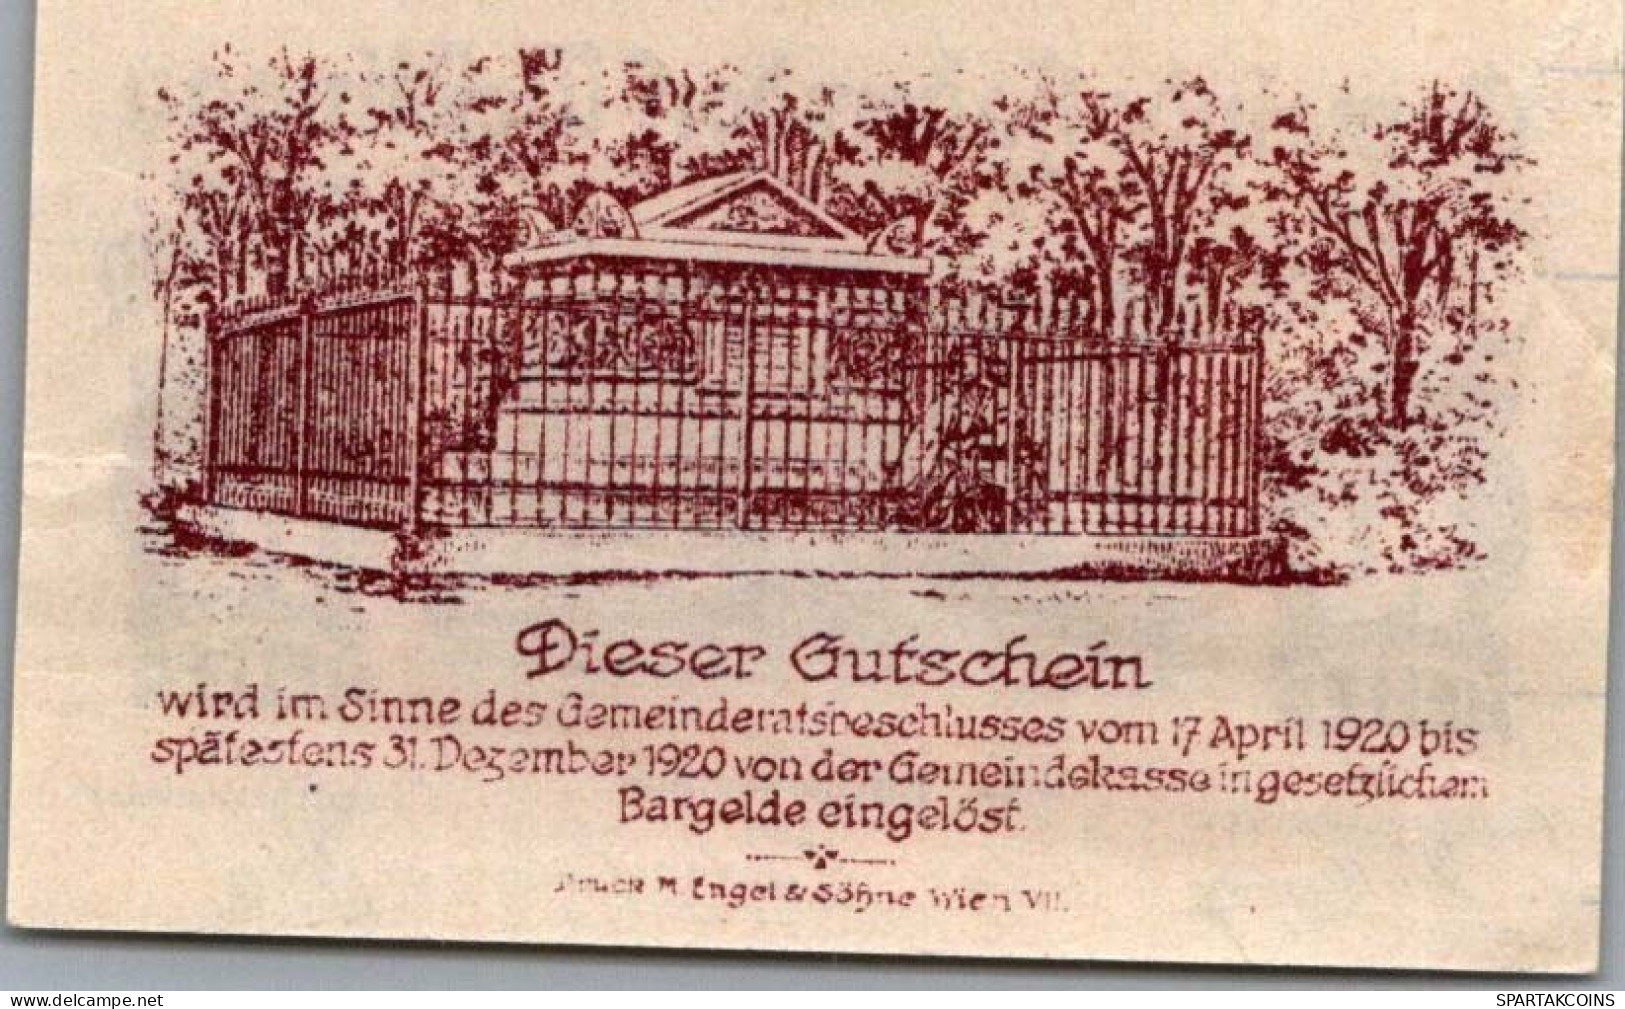 10 HELLER 1920 Stadt HADERSDORF-WEIDLINGAU Niedrigeren Österreich Notgeld Papiergeld Banknote #PG894 - [11] Lokale Uitgaven